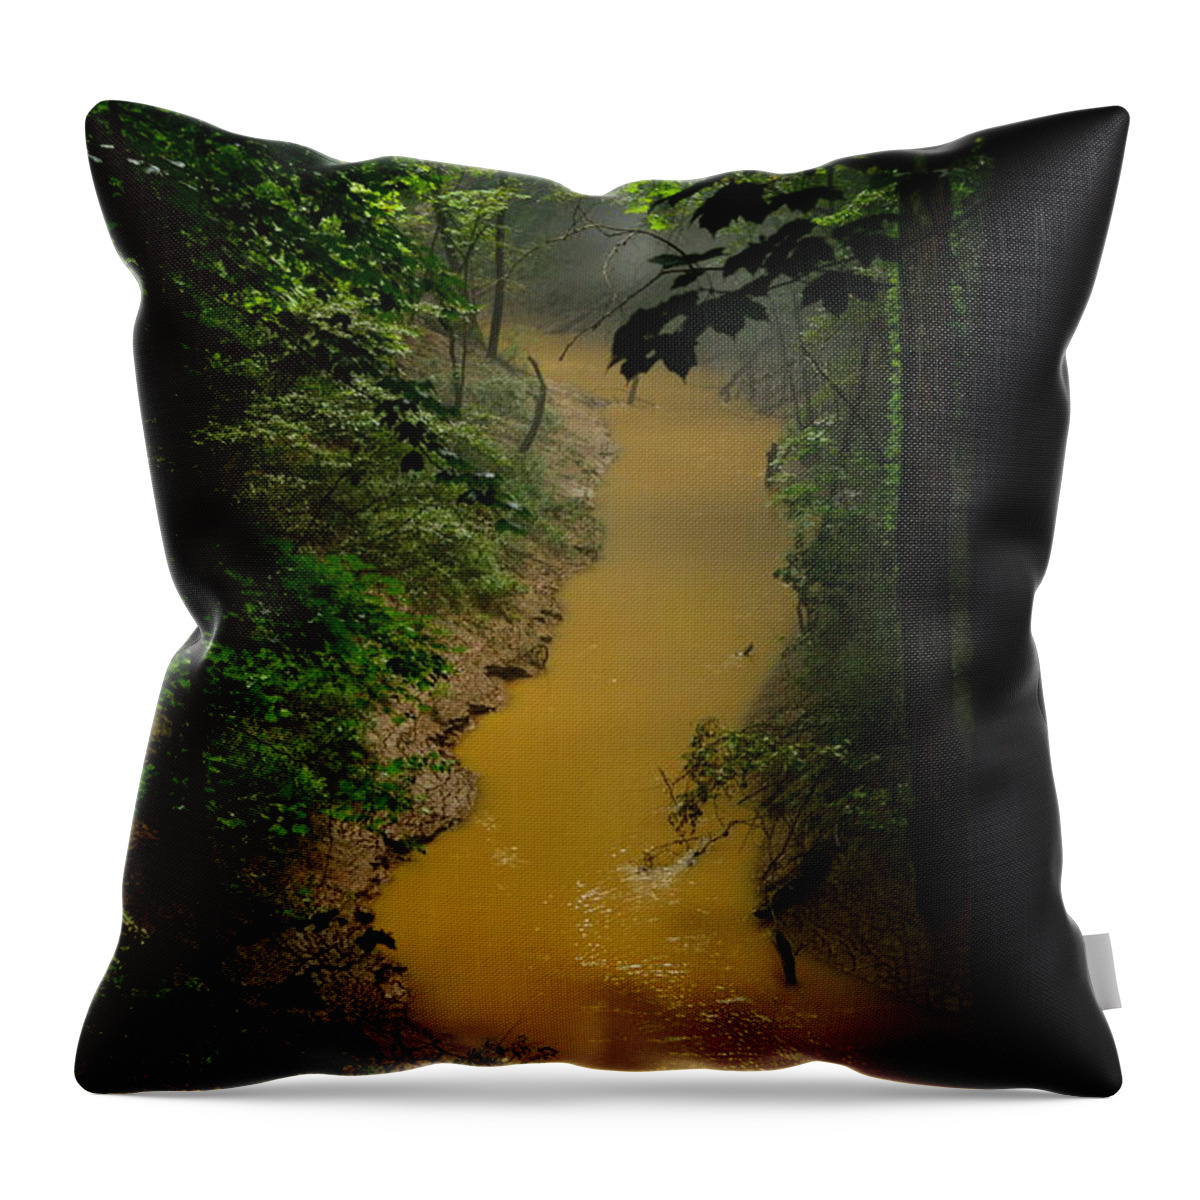  Cedar Sink Creek Throw Pillow featuring the photograph Hidden Cedar SInk Creek by Stacie Siemsen